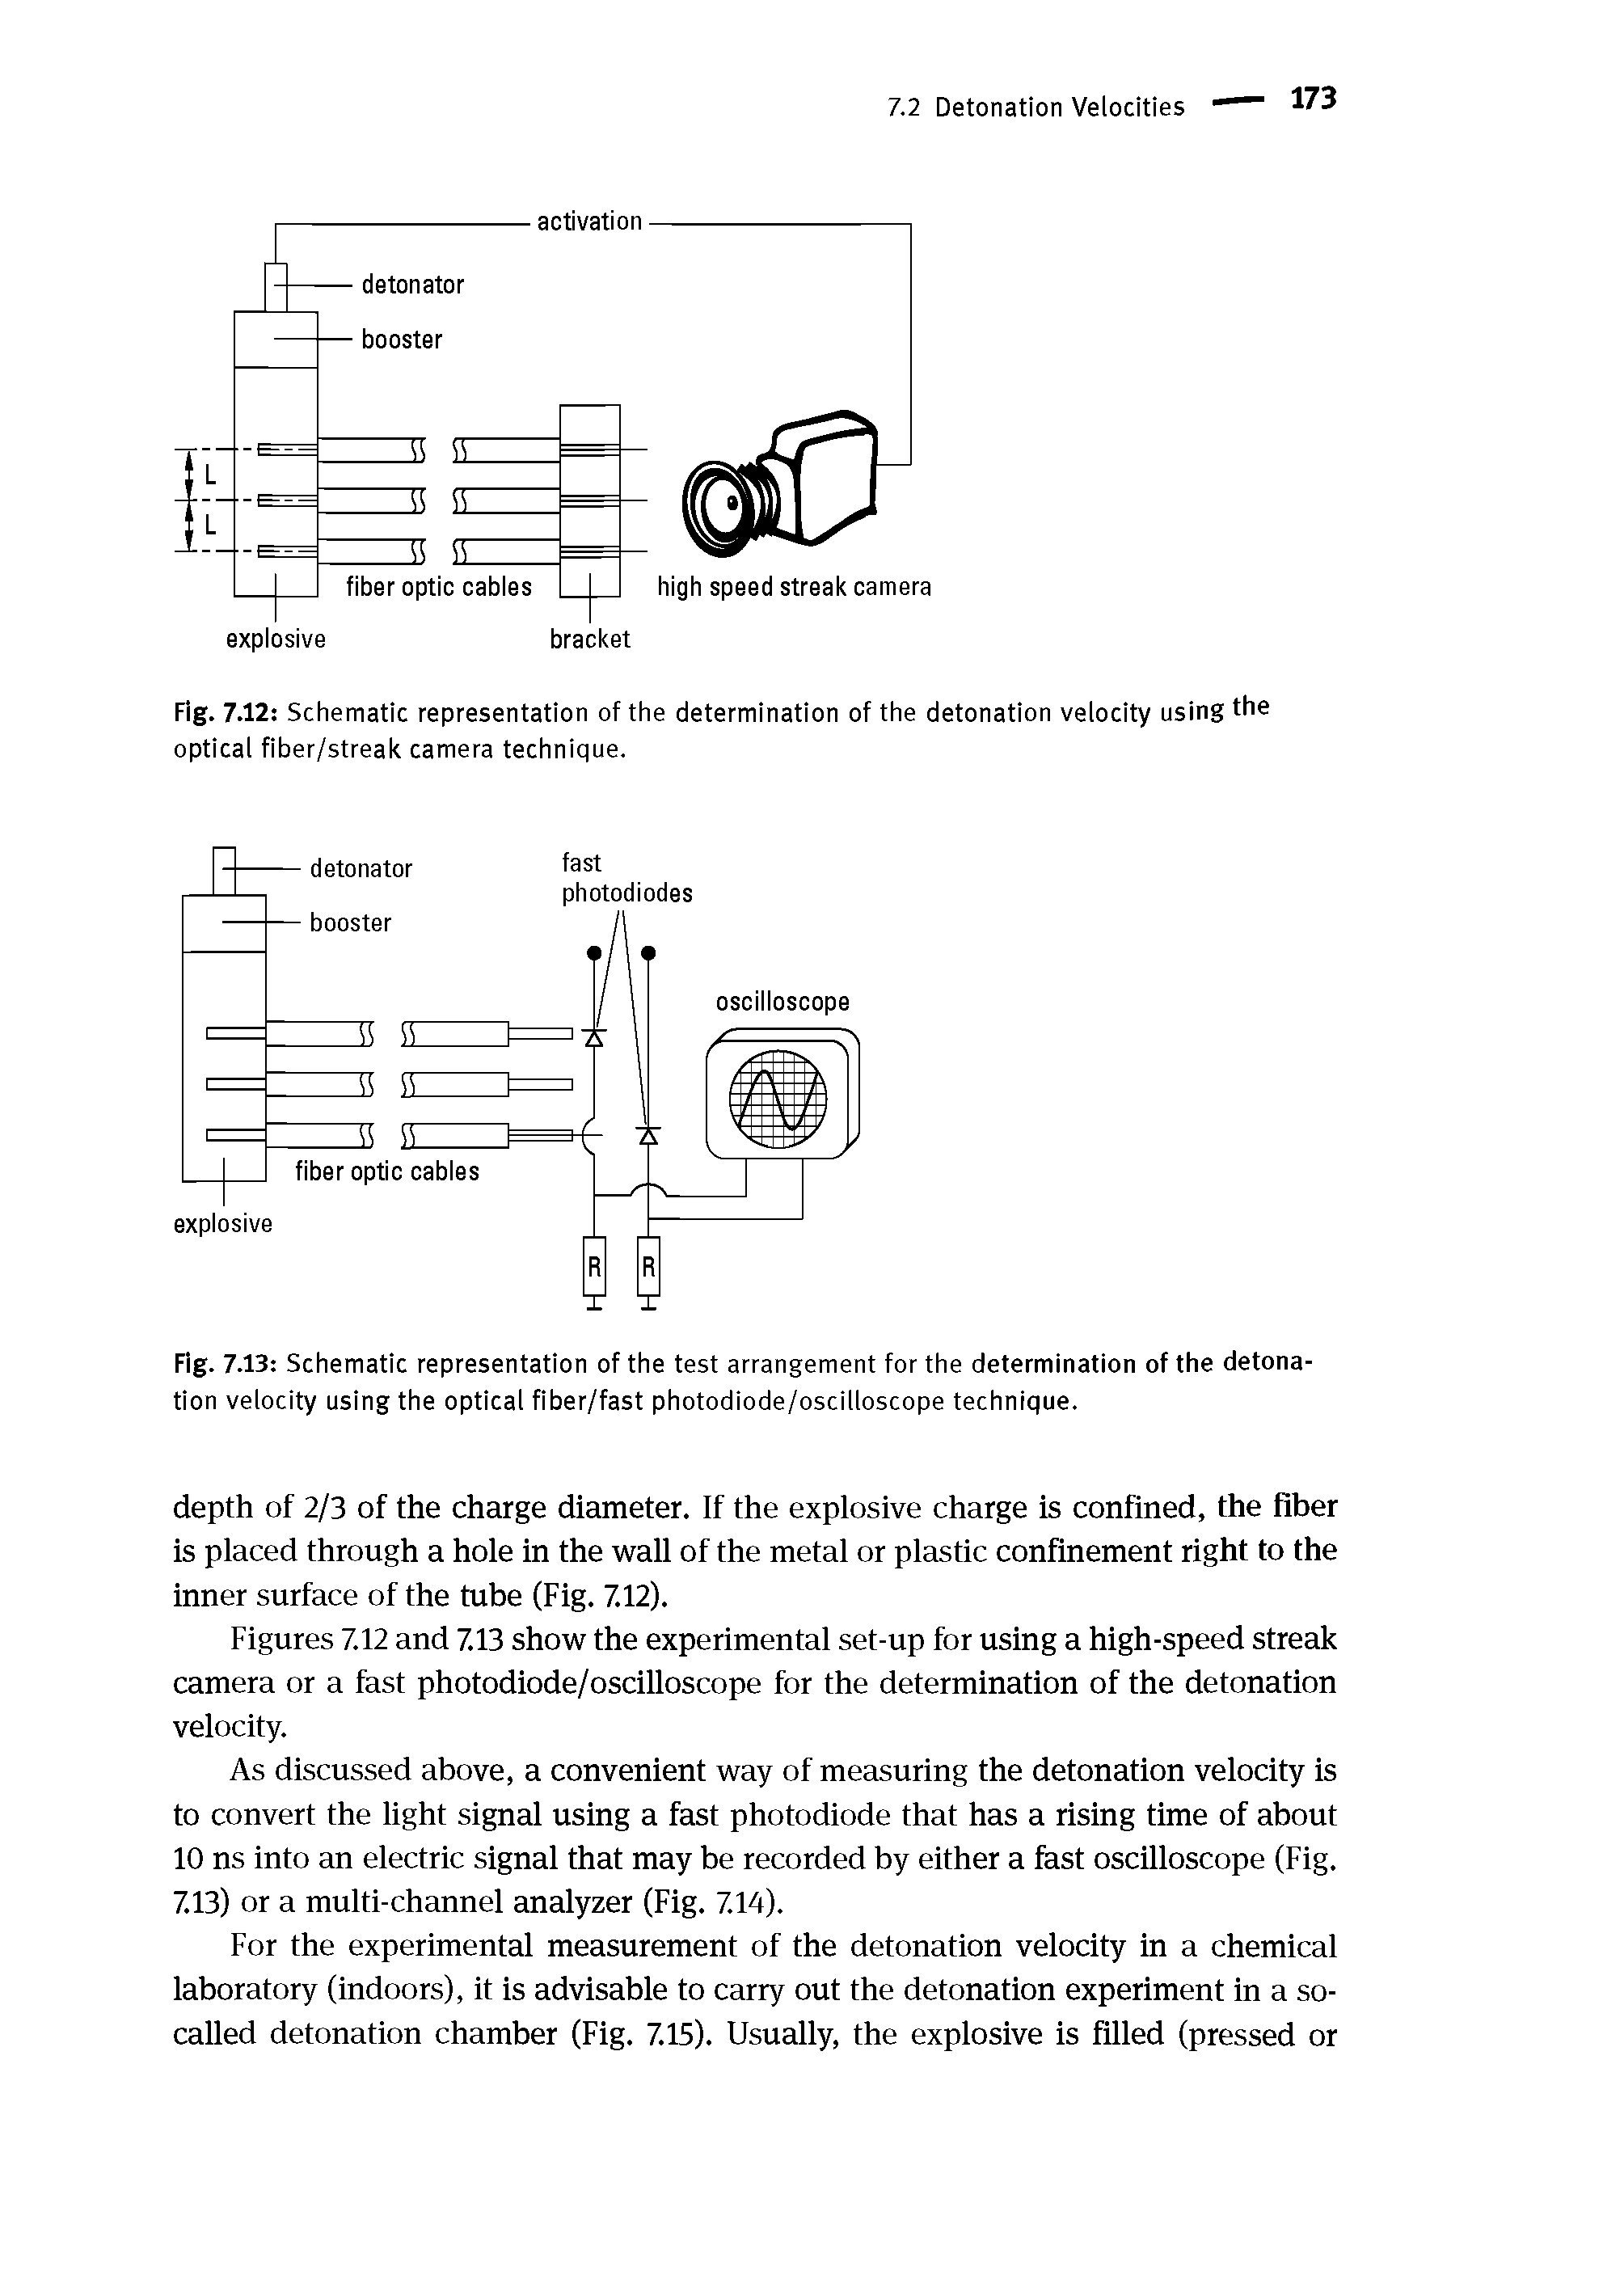 Fig. 7.12 Schematic representation of the determination of the detonation velocity using the optical fiber/streak camera technique.